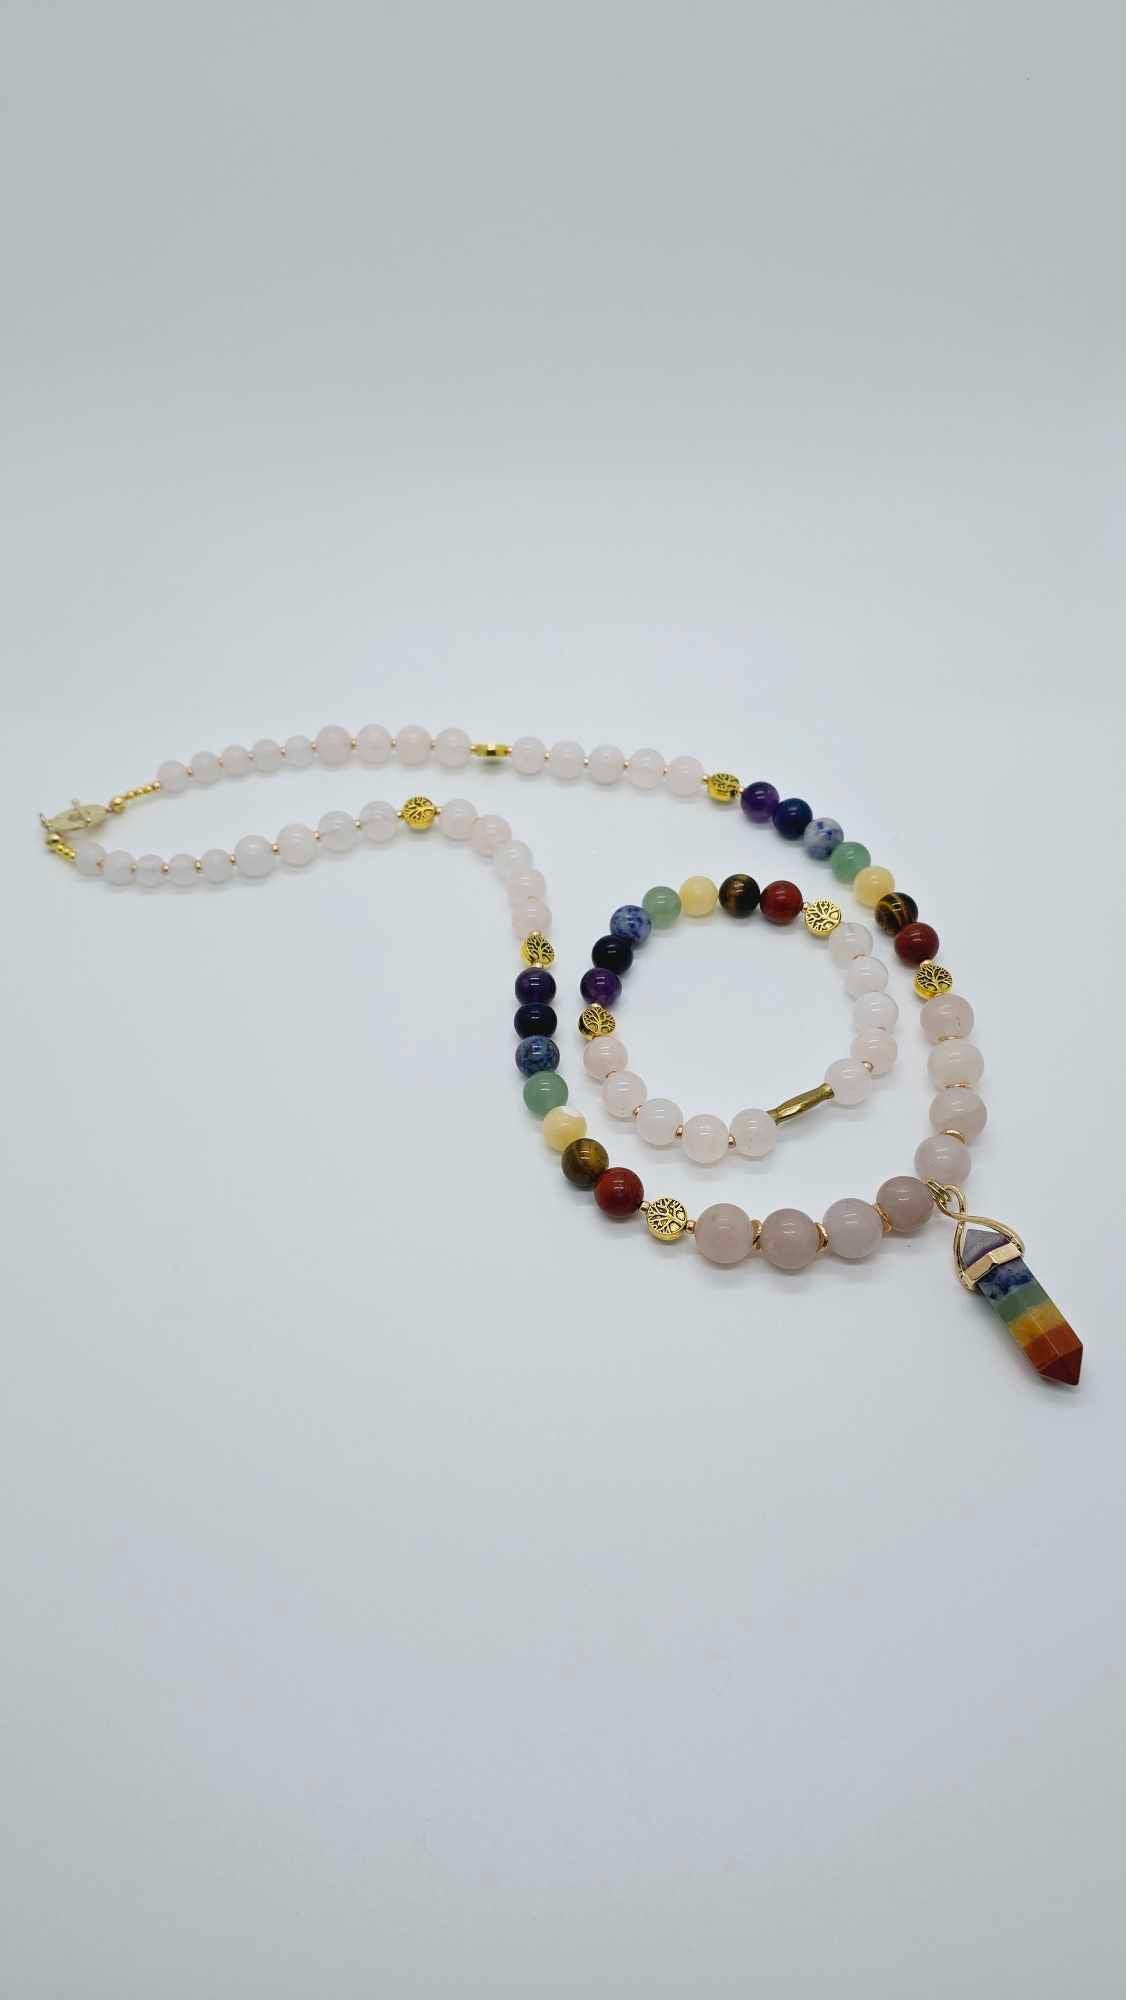 Chakra stone necklace set! (1246 Influencer)